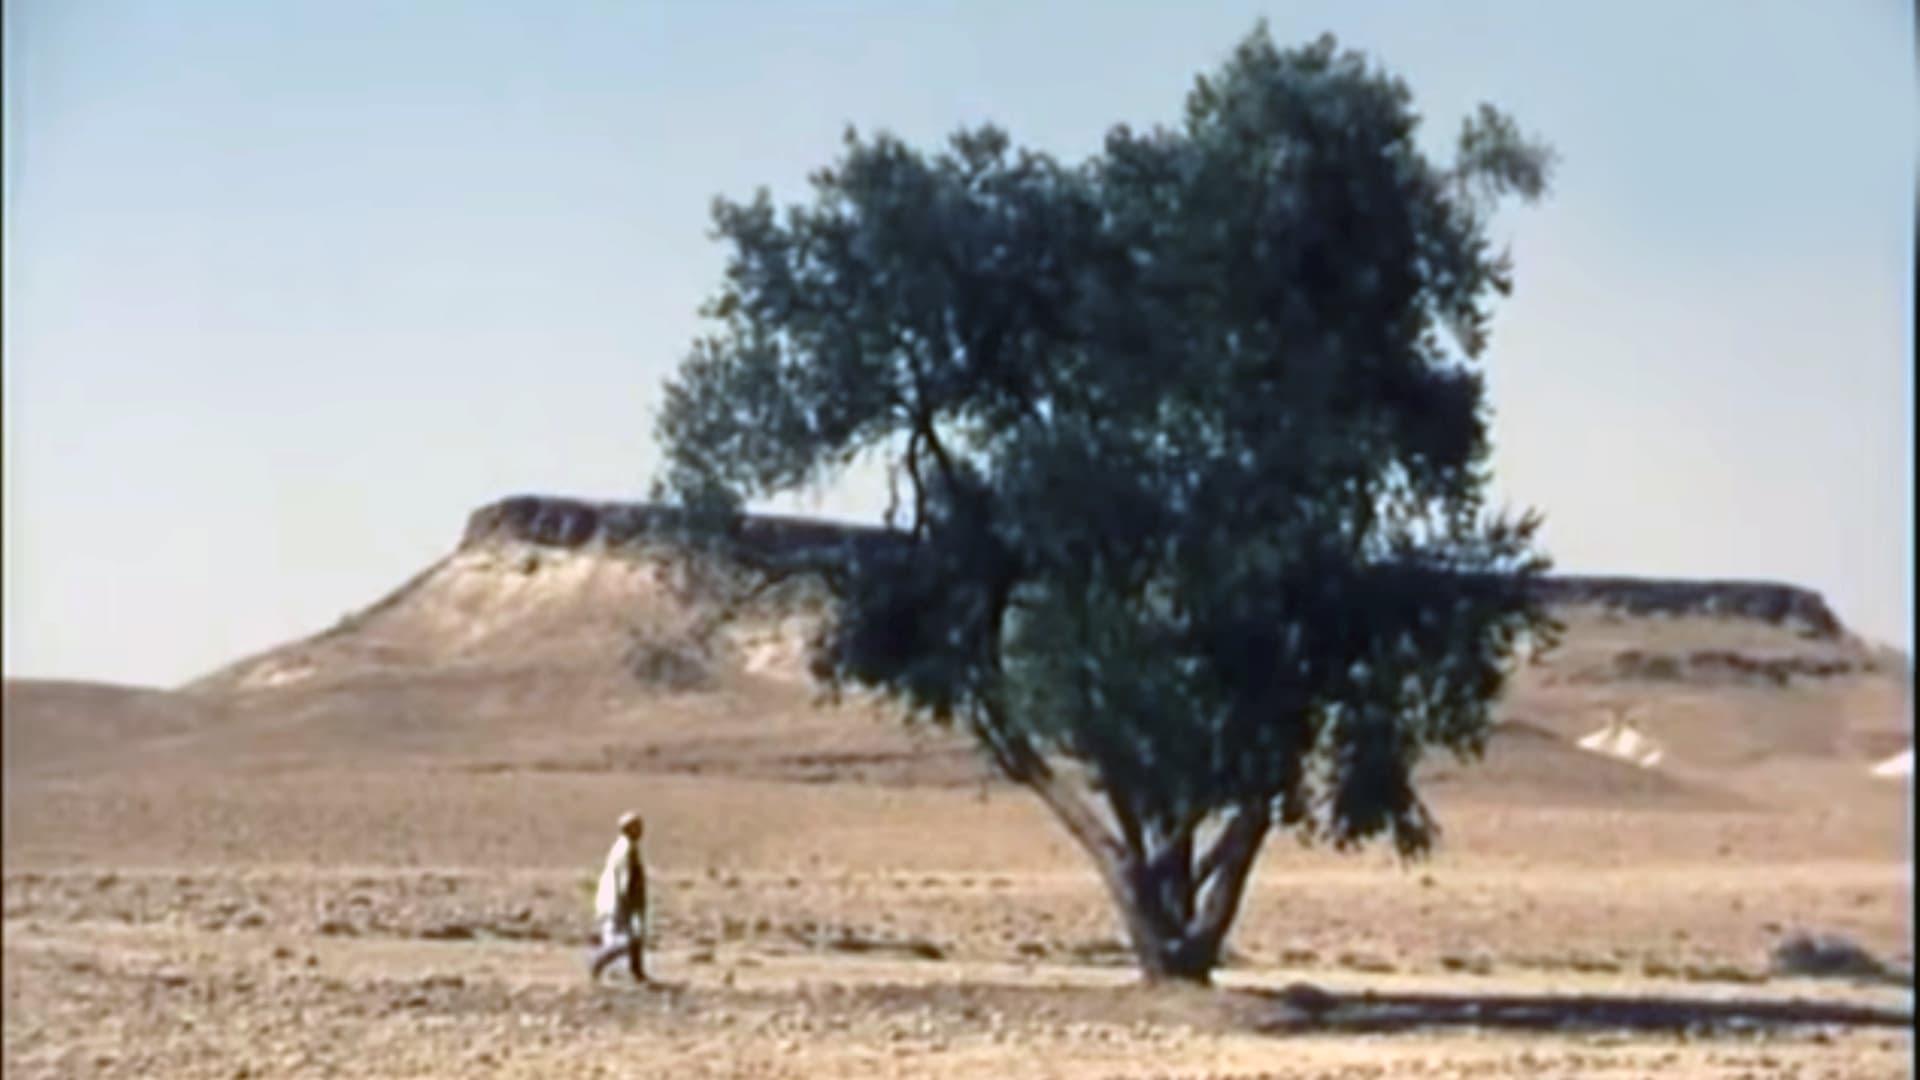 The Olive tree of Boul'hivet backdrop